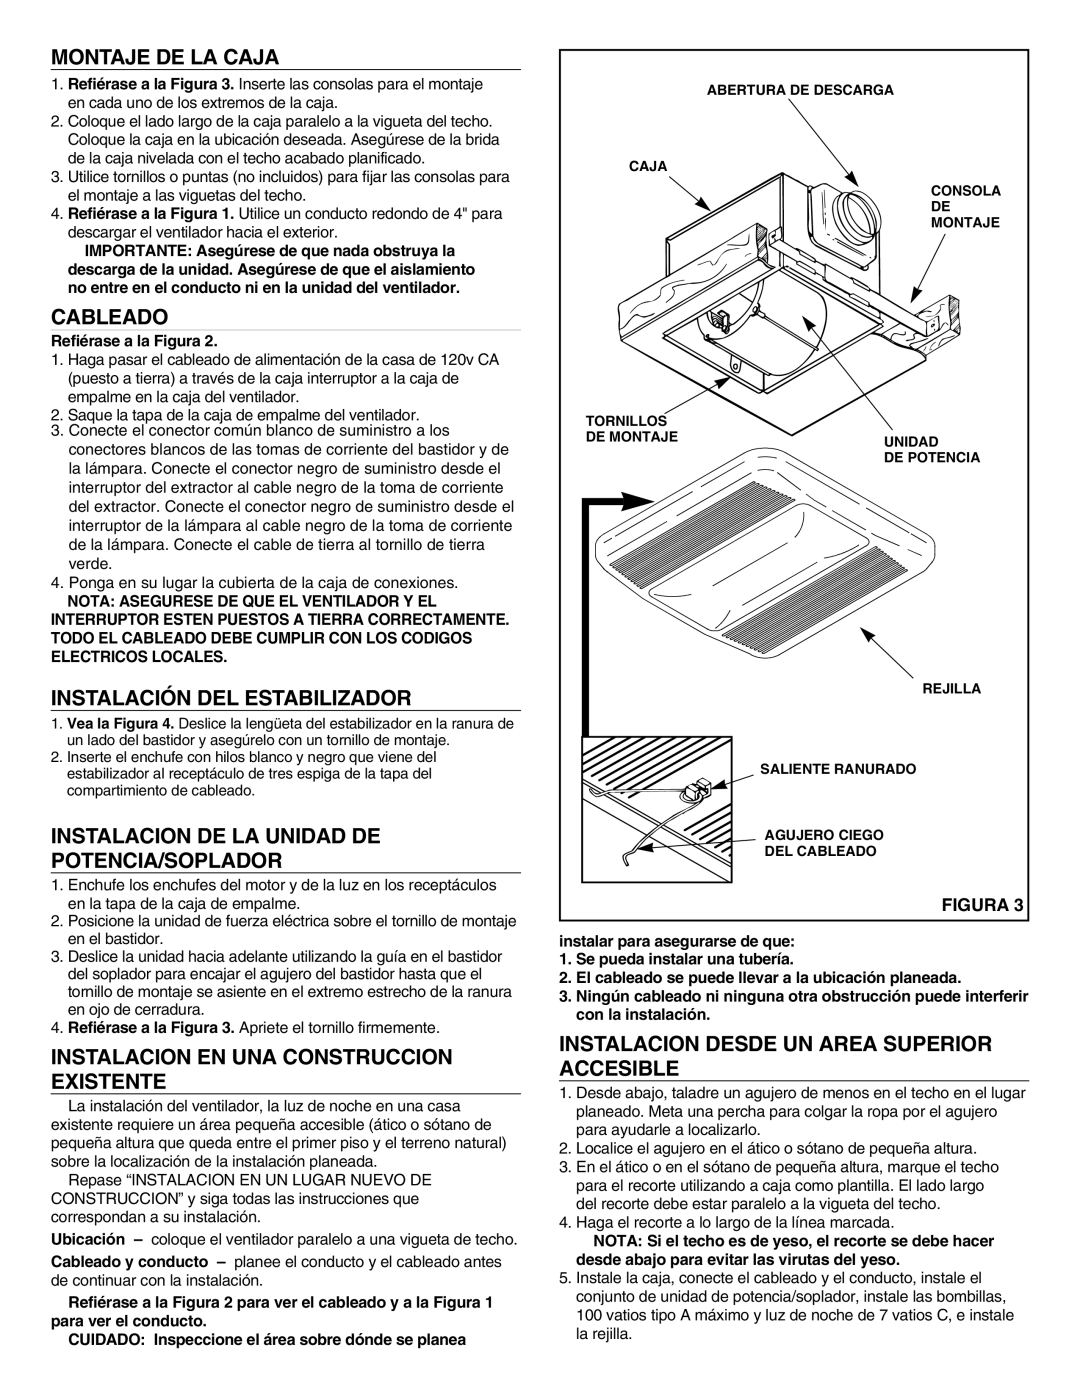 NuTone LS80LF Montaje De La Caja, Cableado, Instalación Del Estabilizador, Instalacion De La Unidad De Potencia/Soplador 